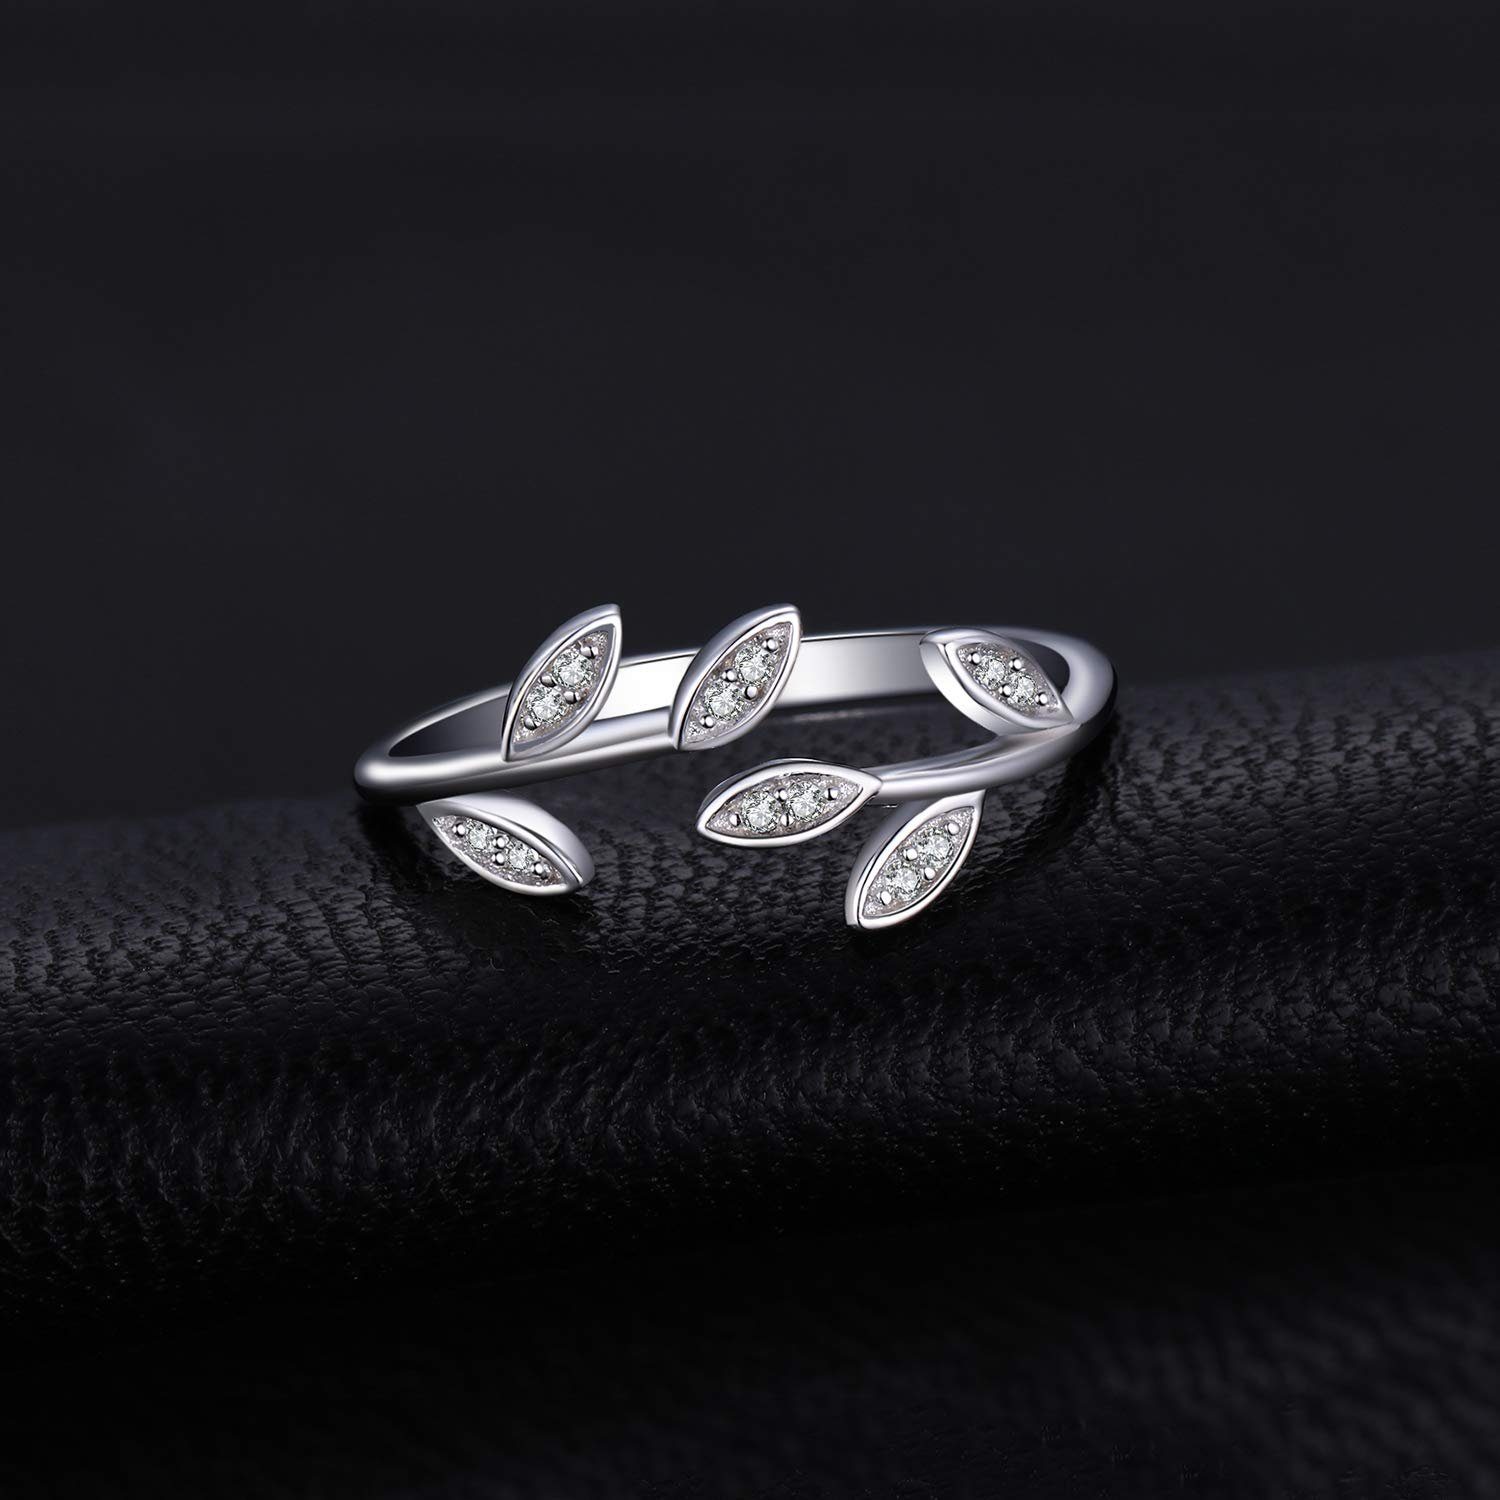 Frauen 925er Sterling Silber Silberschmuck Olivenzweig Sterlingsilber POCHUMIDUU S925 Fingerring für aus Frauen Ring,